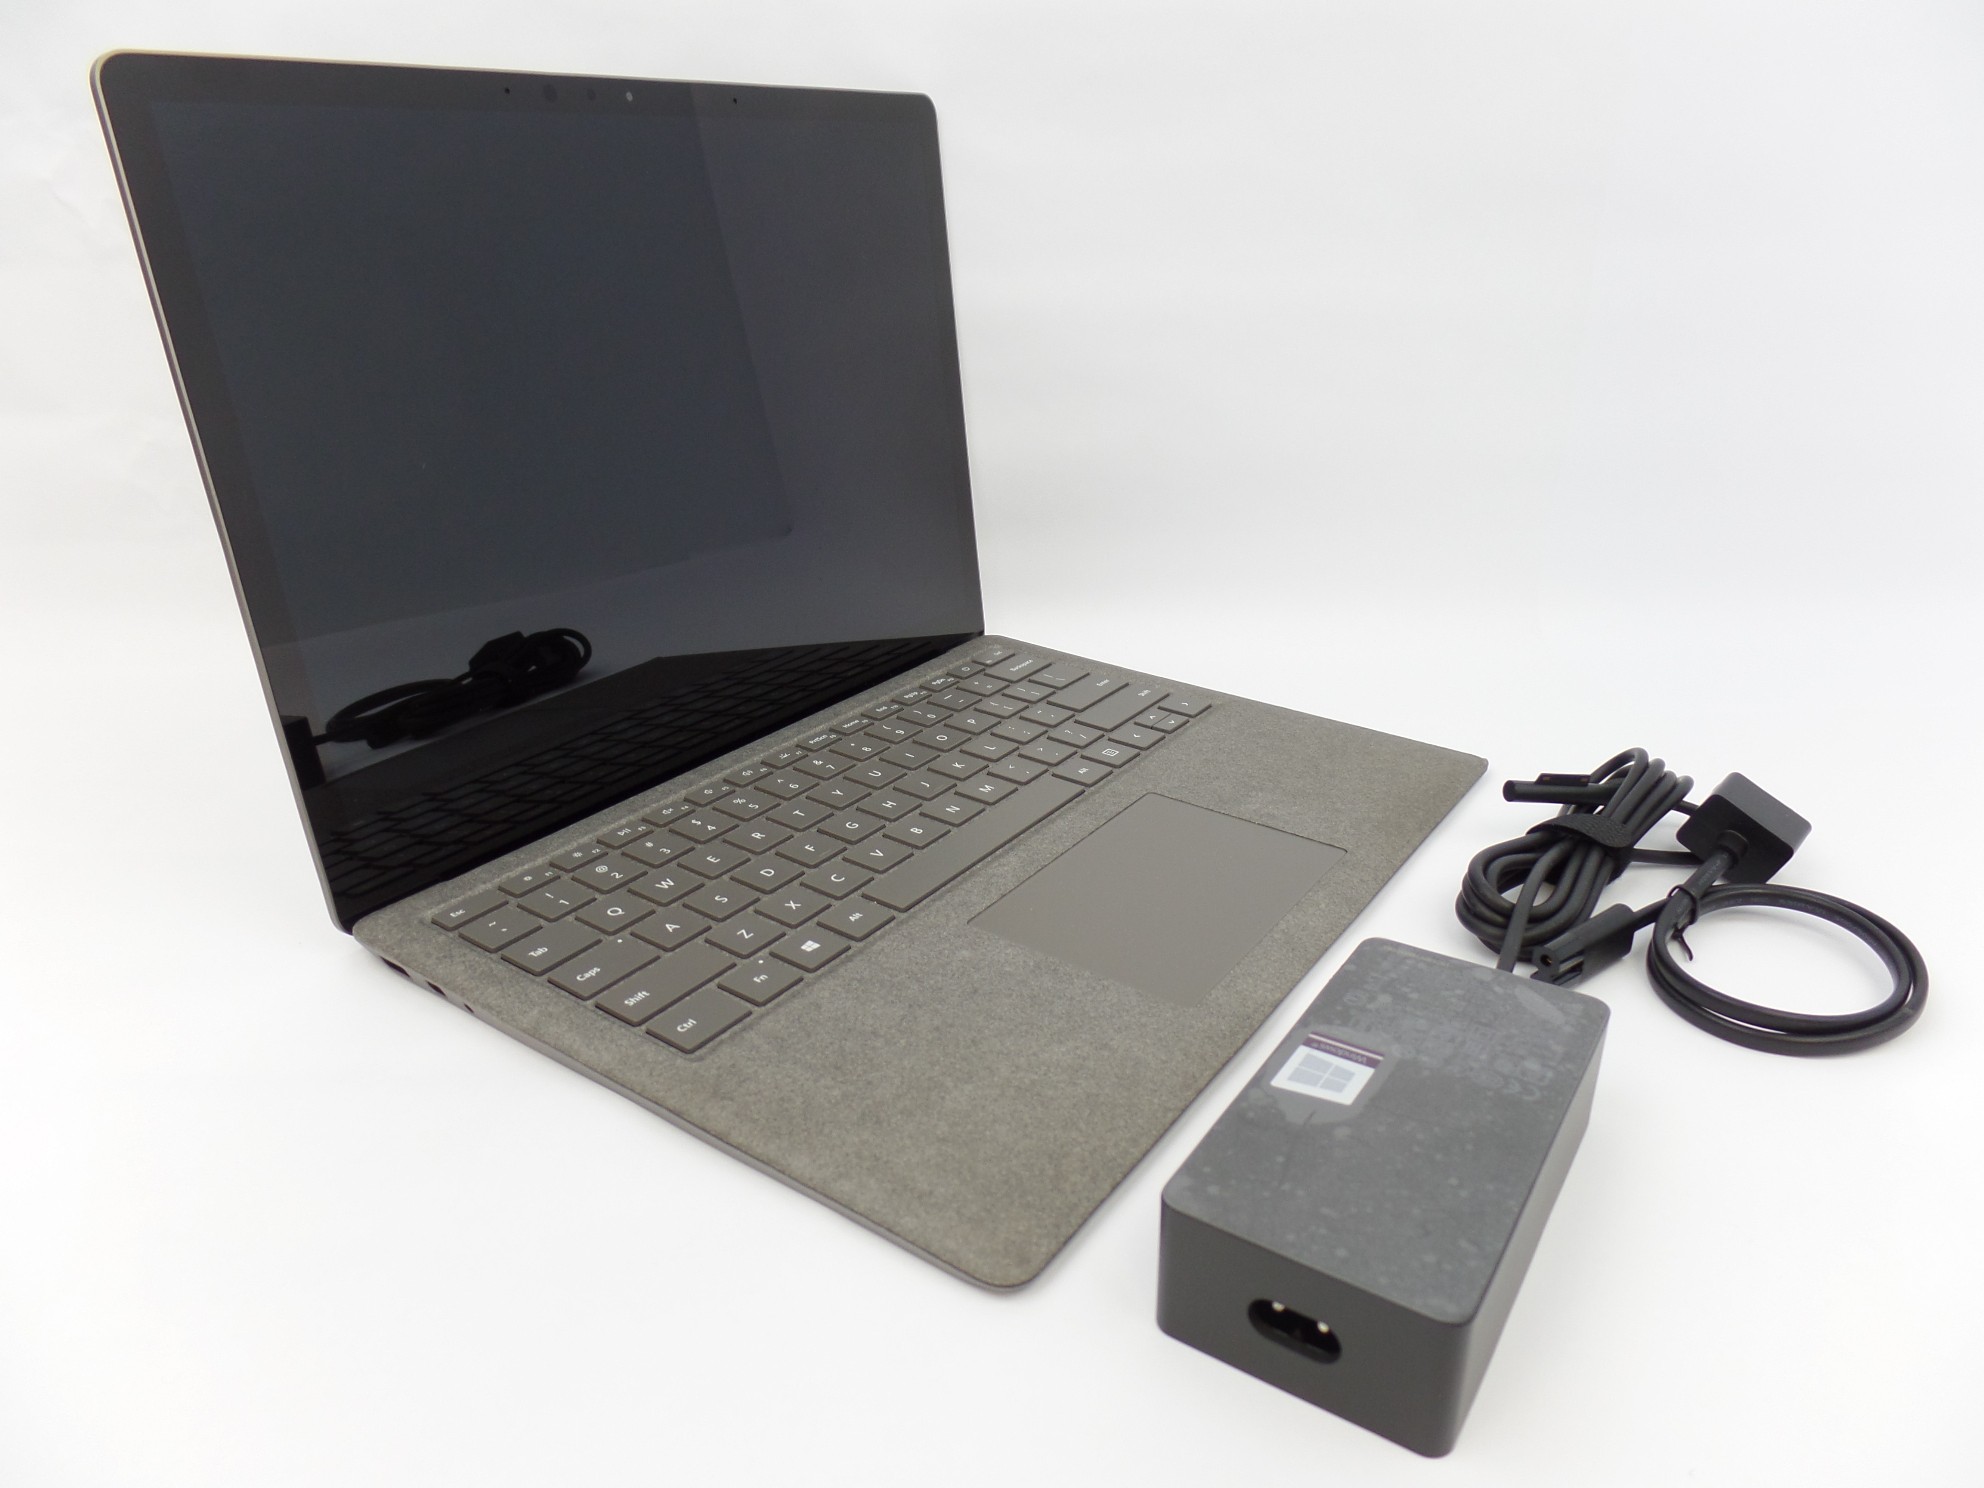 Microsoft Surface Laptop 1769 13.5" Touch i5-7200 2.5GHz 8GB 256GB SSD W10 U1